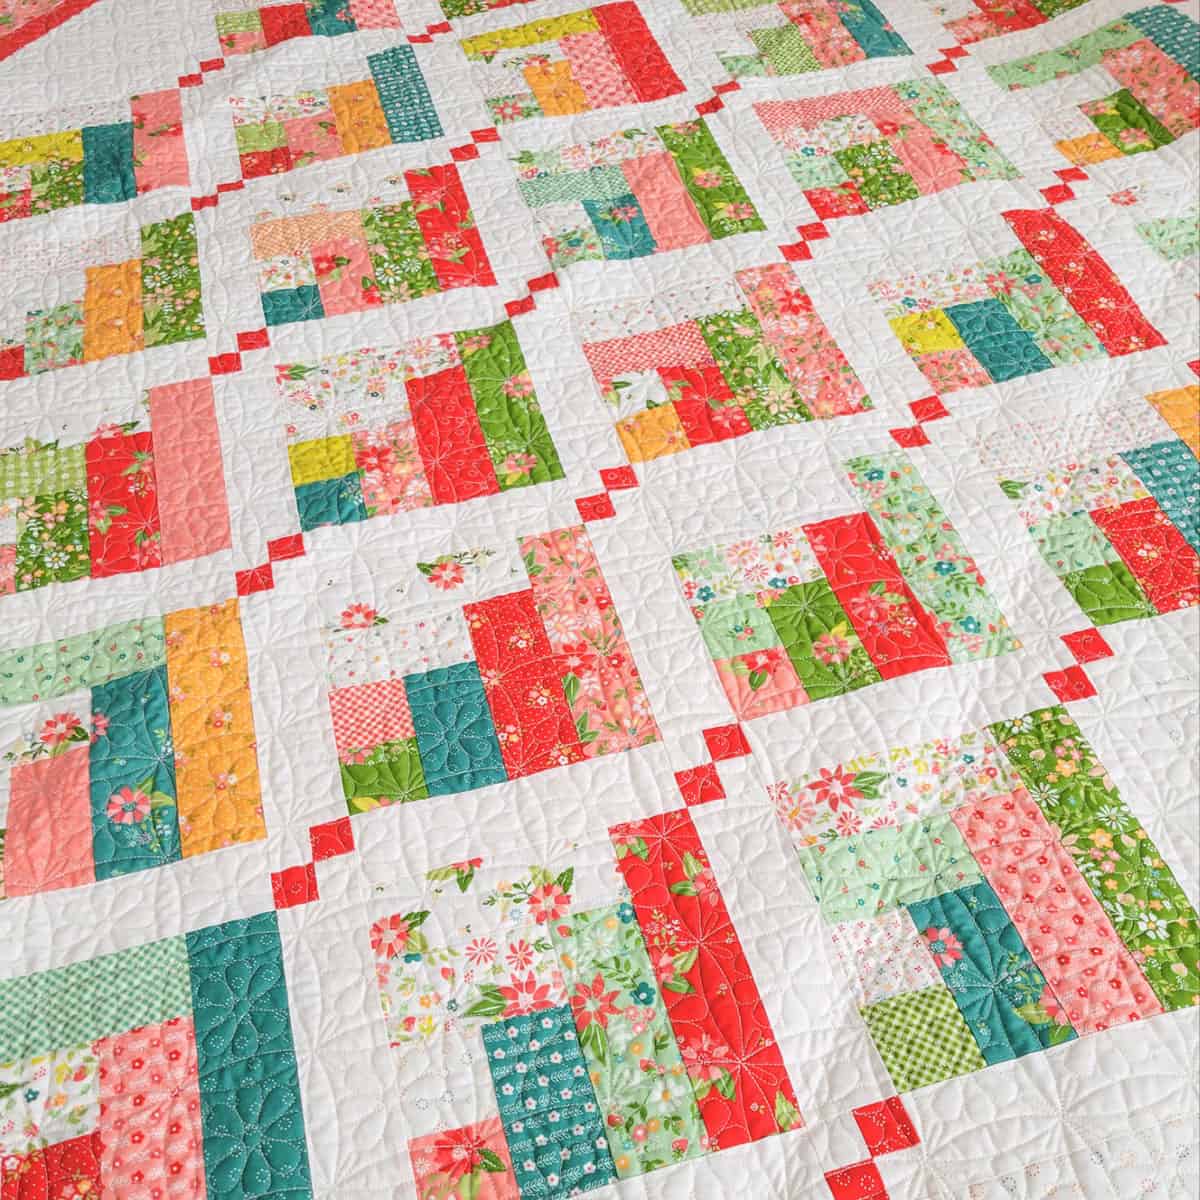 Season's Greetings quilt in Strawberry Lemonade fabrics by Sherri & Chelsi for Moda